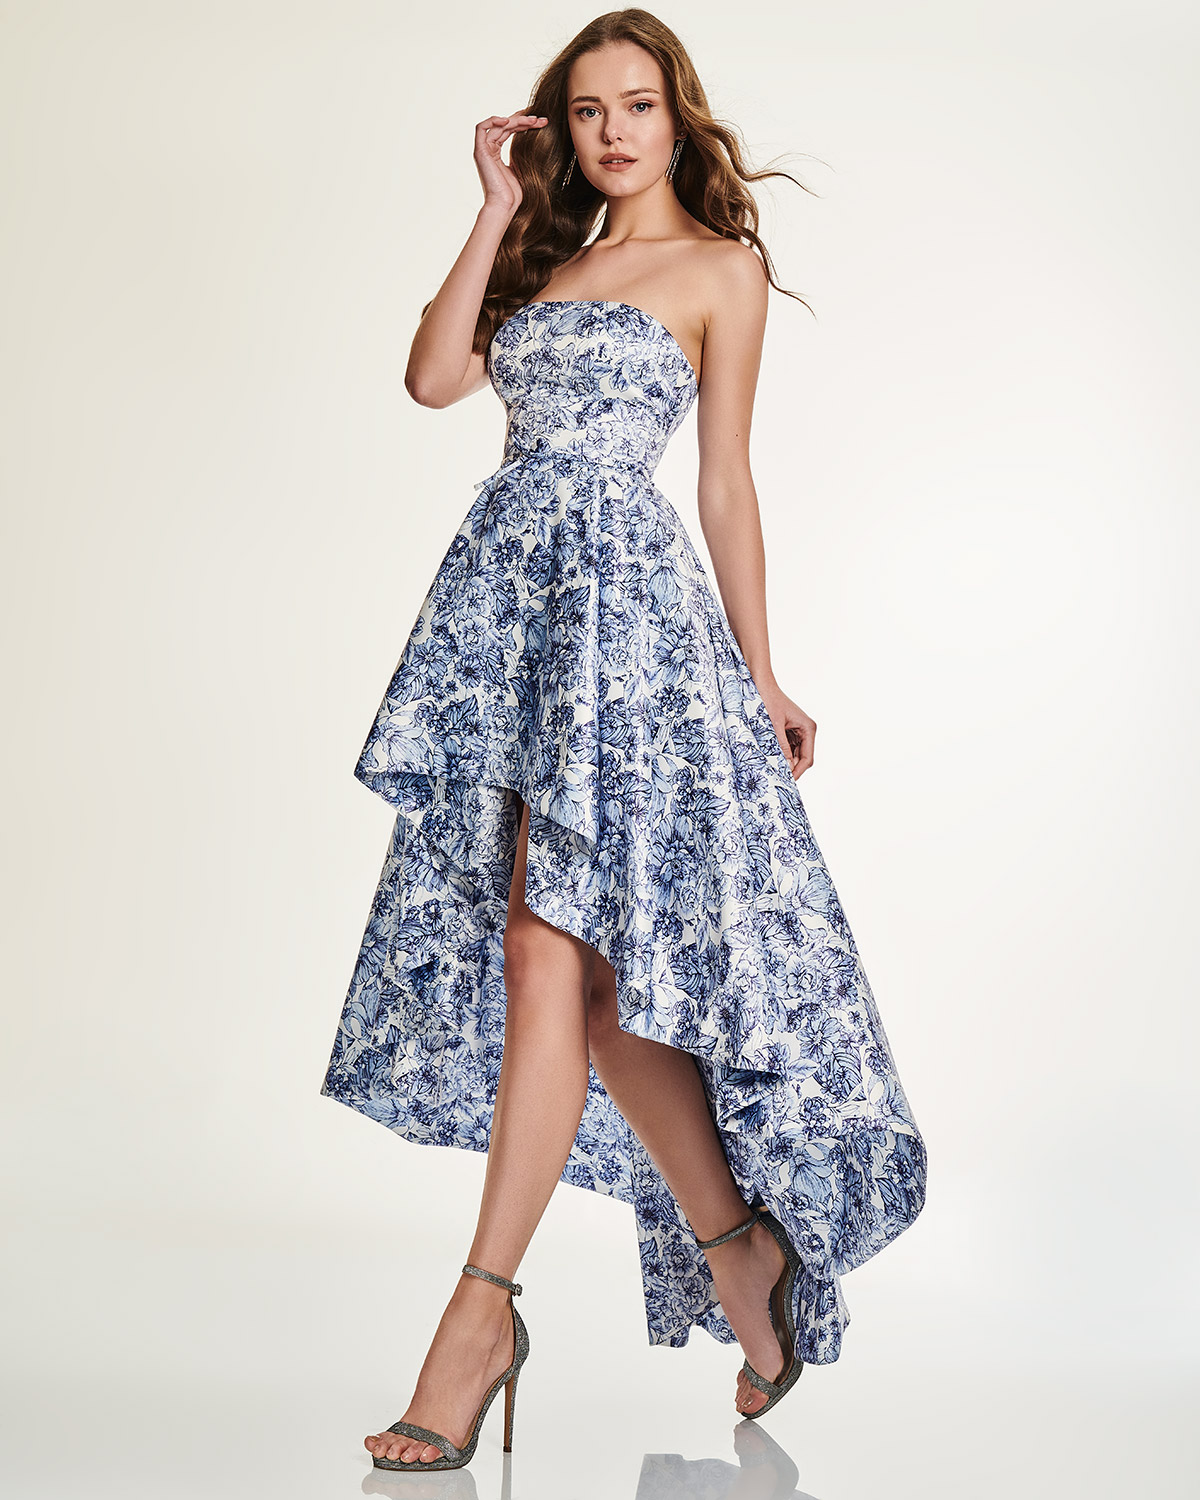 Κοκτέιλ Φορέματα / Κοκτέιλ ασύμμετρο στράπλες φόρεμα με φλοράλ μοτίβο